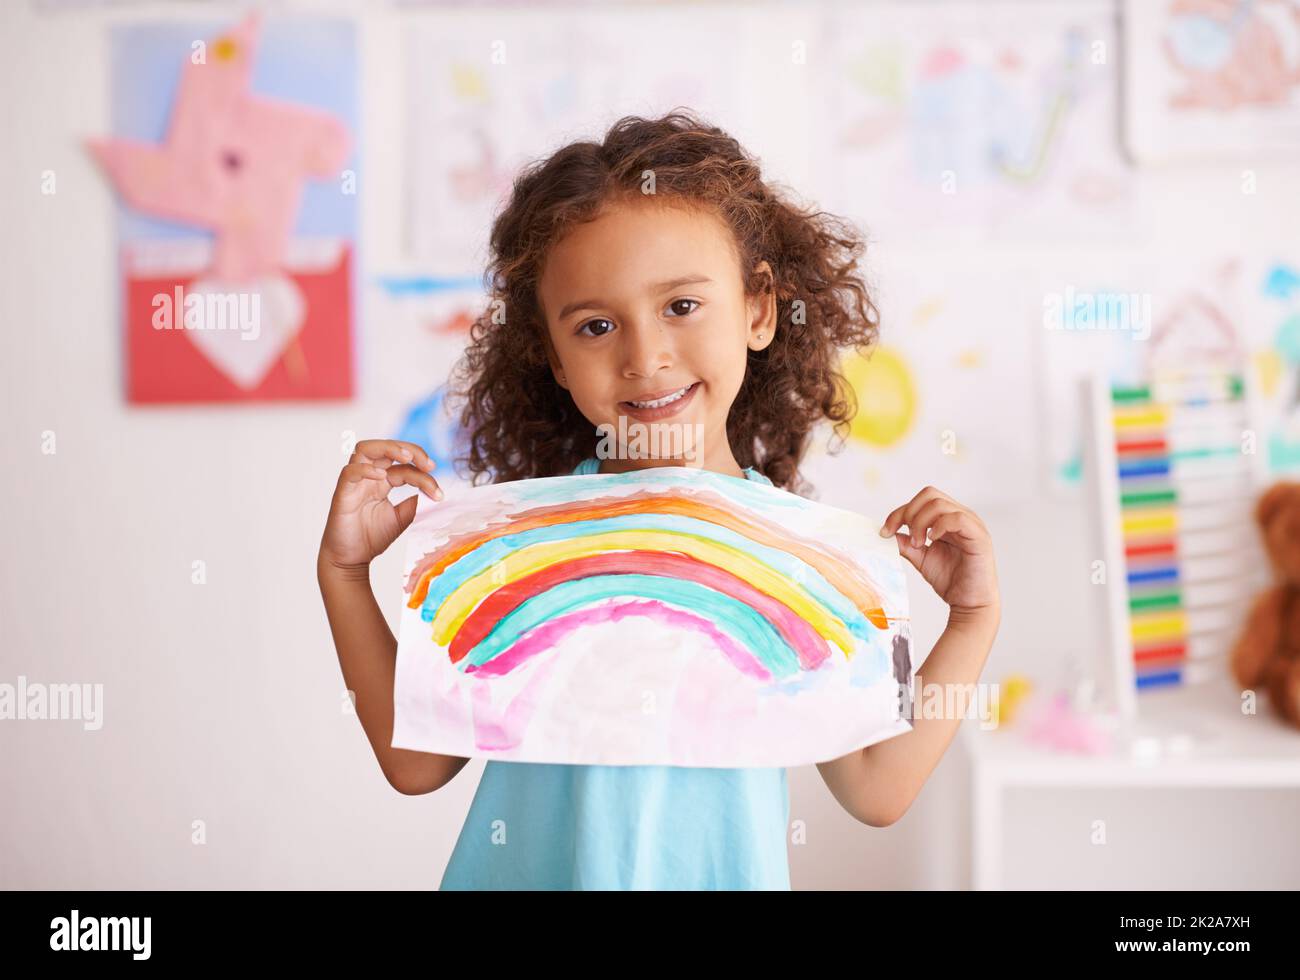 Vous n'aimez pas les couleurs. Photo d'une petite fille tenant une photo qu'elle peint d'un arc-en-ciel. Banque D'Images